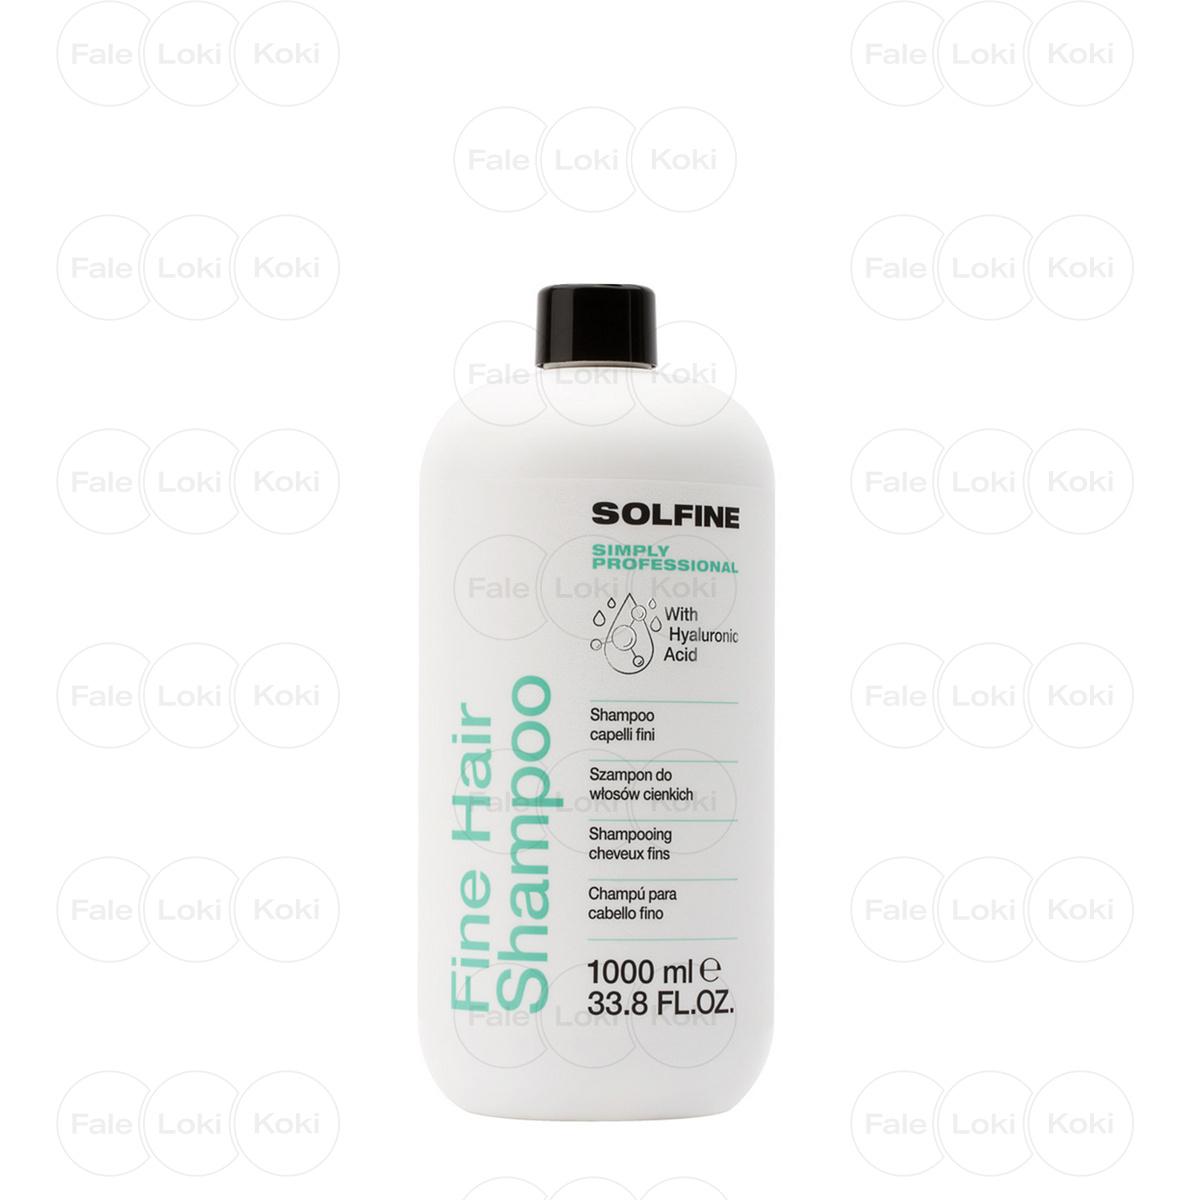 SOLFINE CARE szampon do włosów cienkich FINE 1000 ml